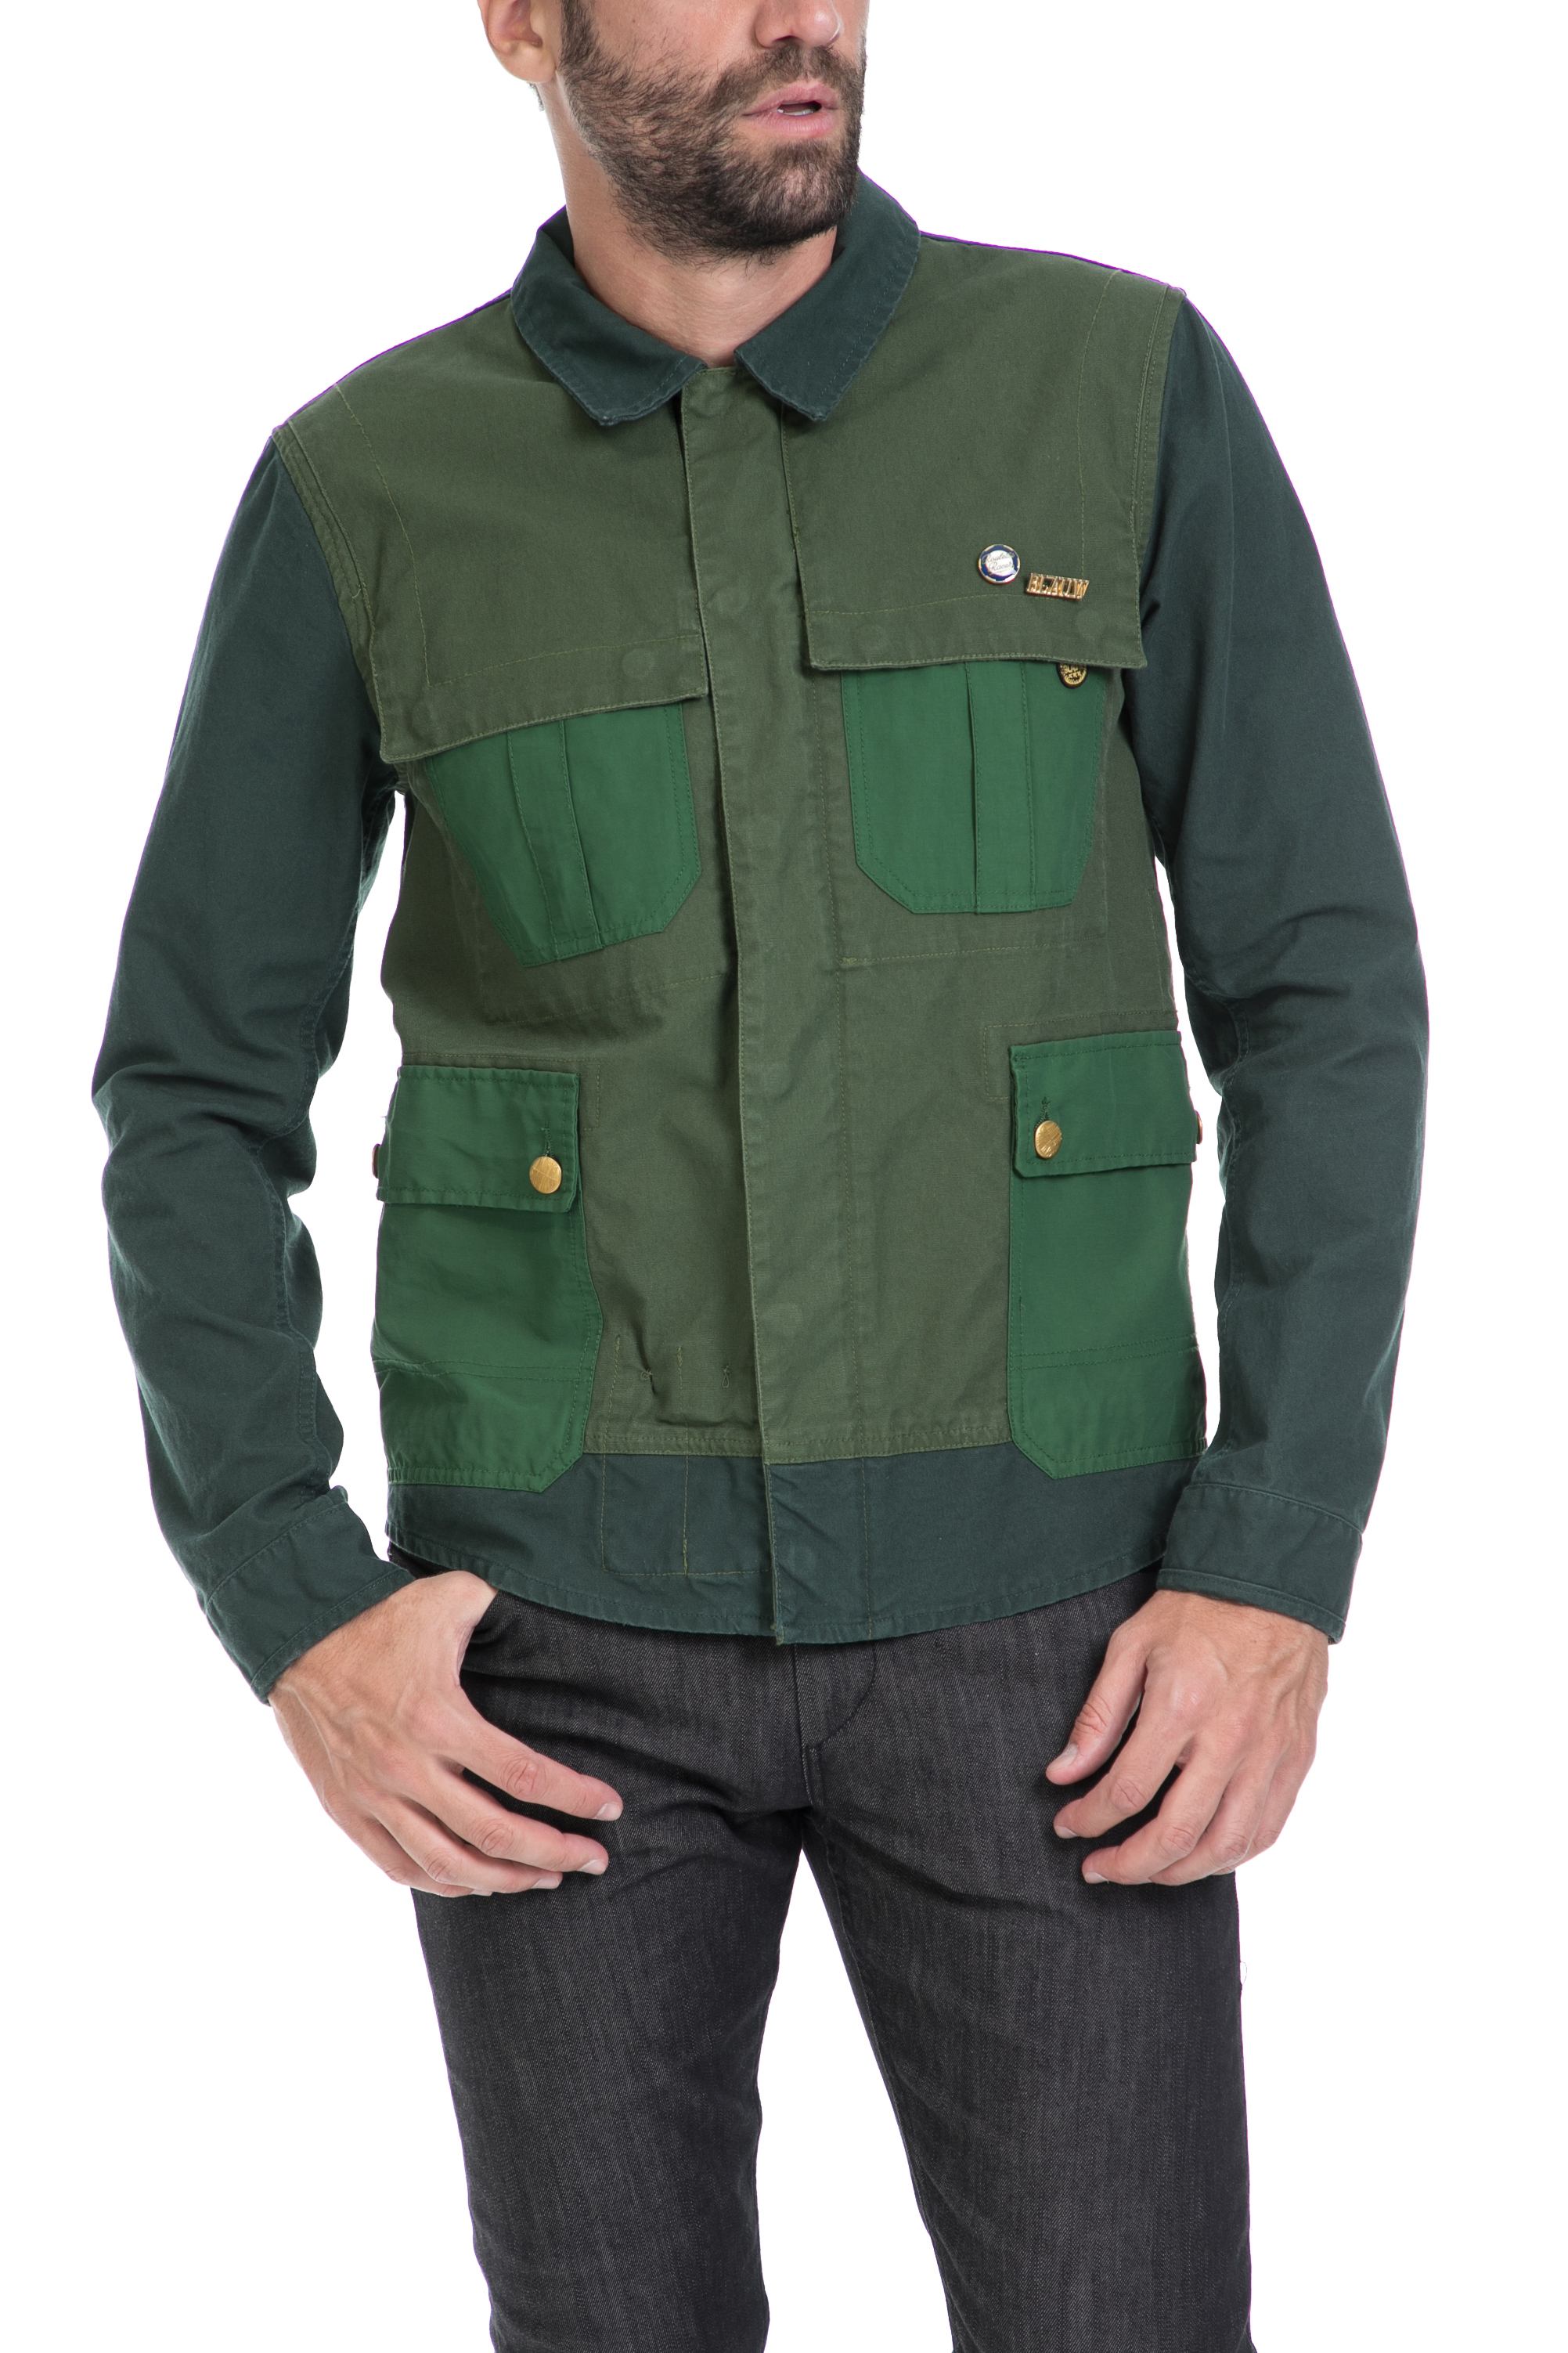 Ανδρικά/Ρούχα/Πανωφόρια/Μπουφάν SCOTCH & SODA - Ανδρικό μπουφάν Gaucho customized workwear πράσινο